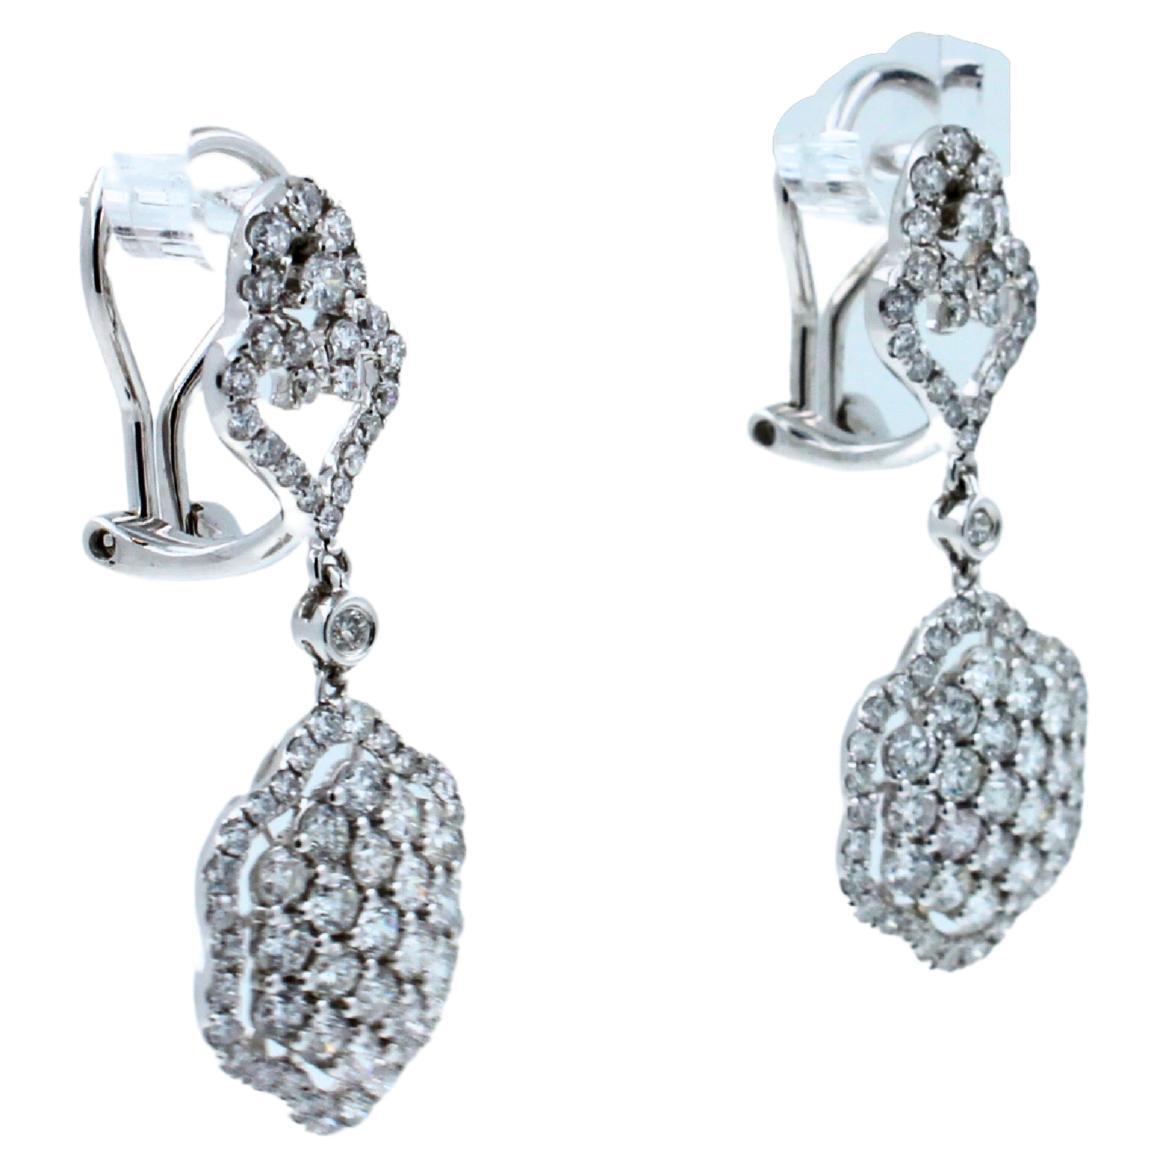 Boucles d'oreilles pendantes en or blanc 18K avec halo de diamants et pavé de trèfles.
Or blanc 18 carats
Diamants 2.50 ctw Qualité G/VS
